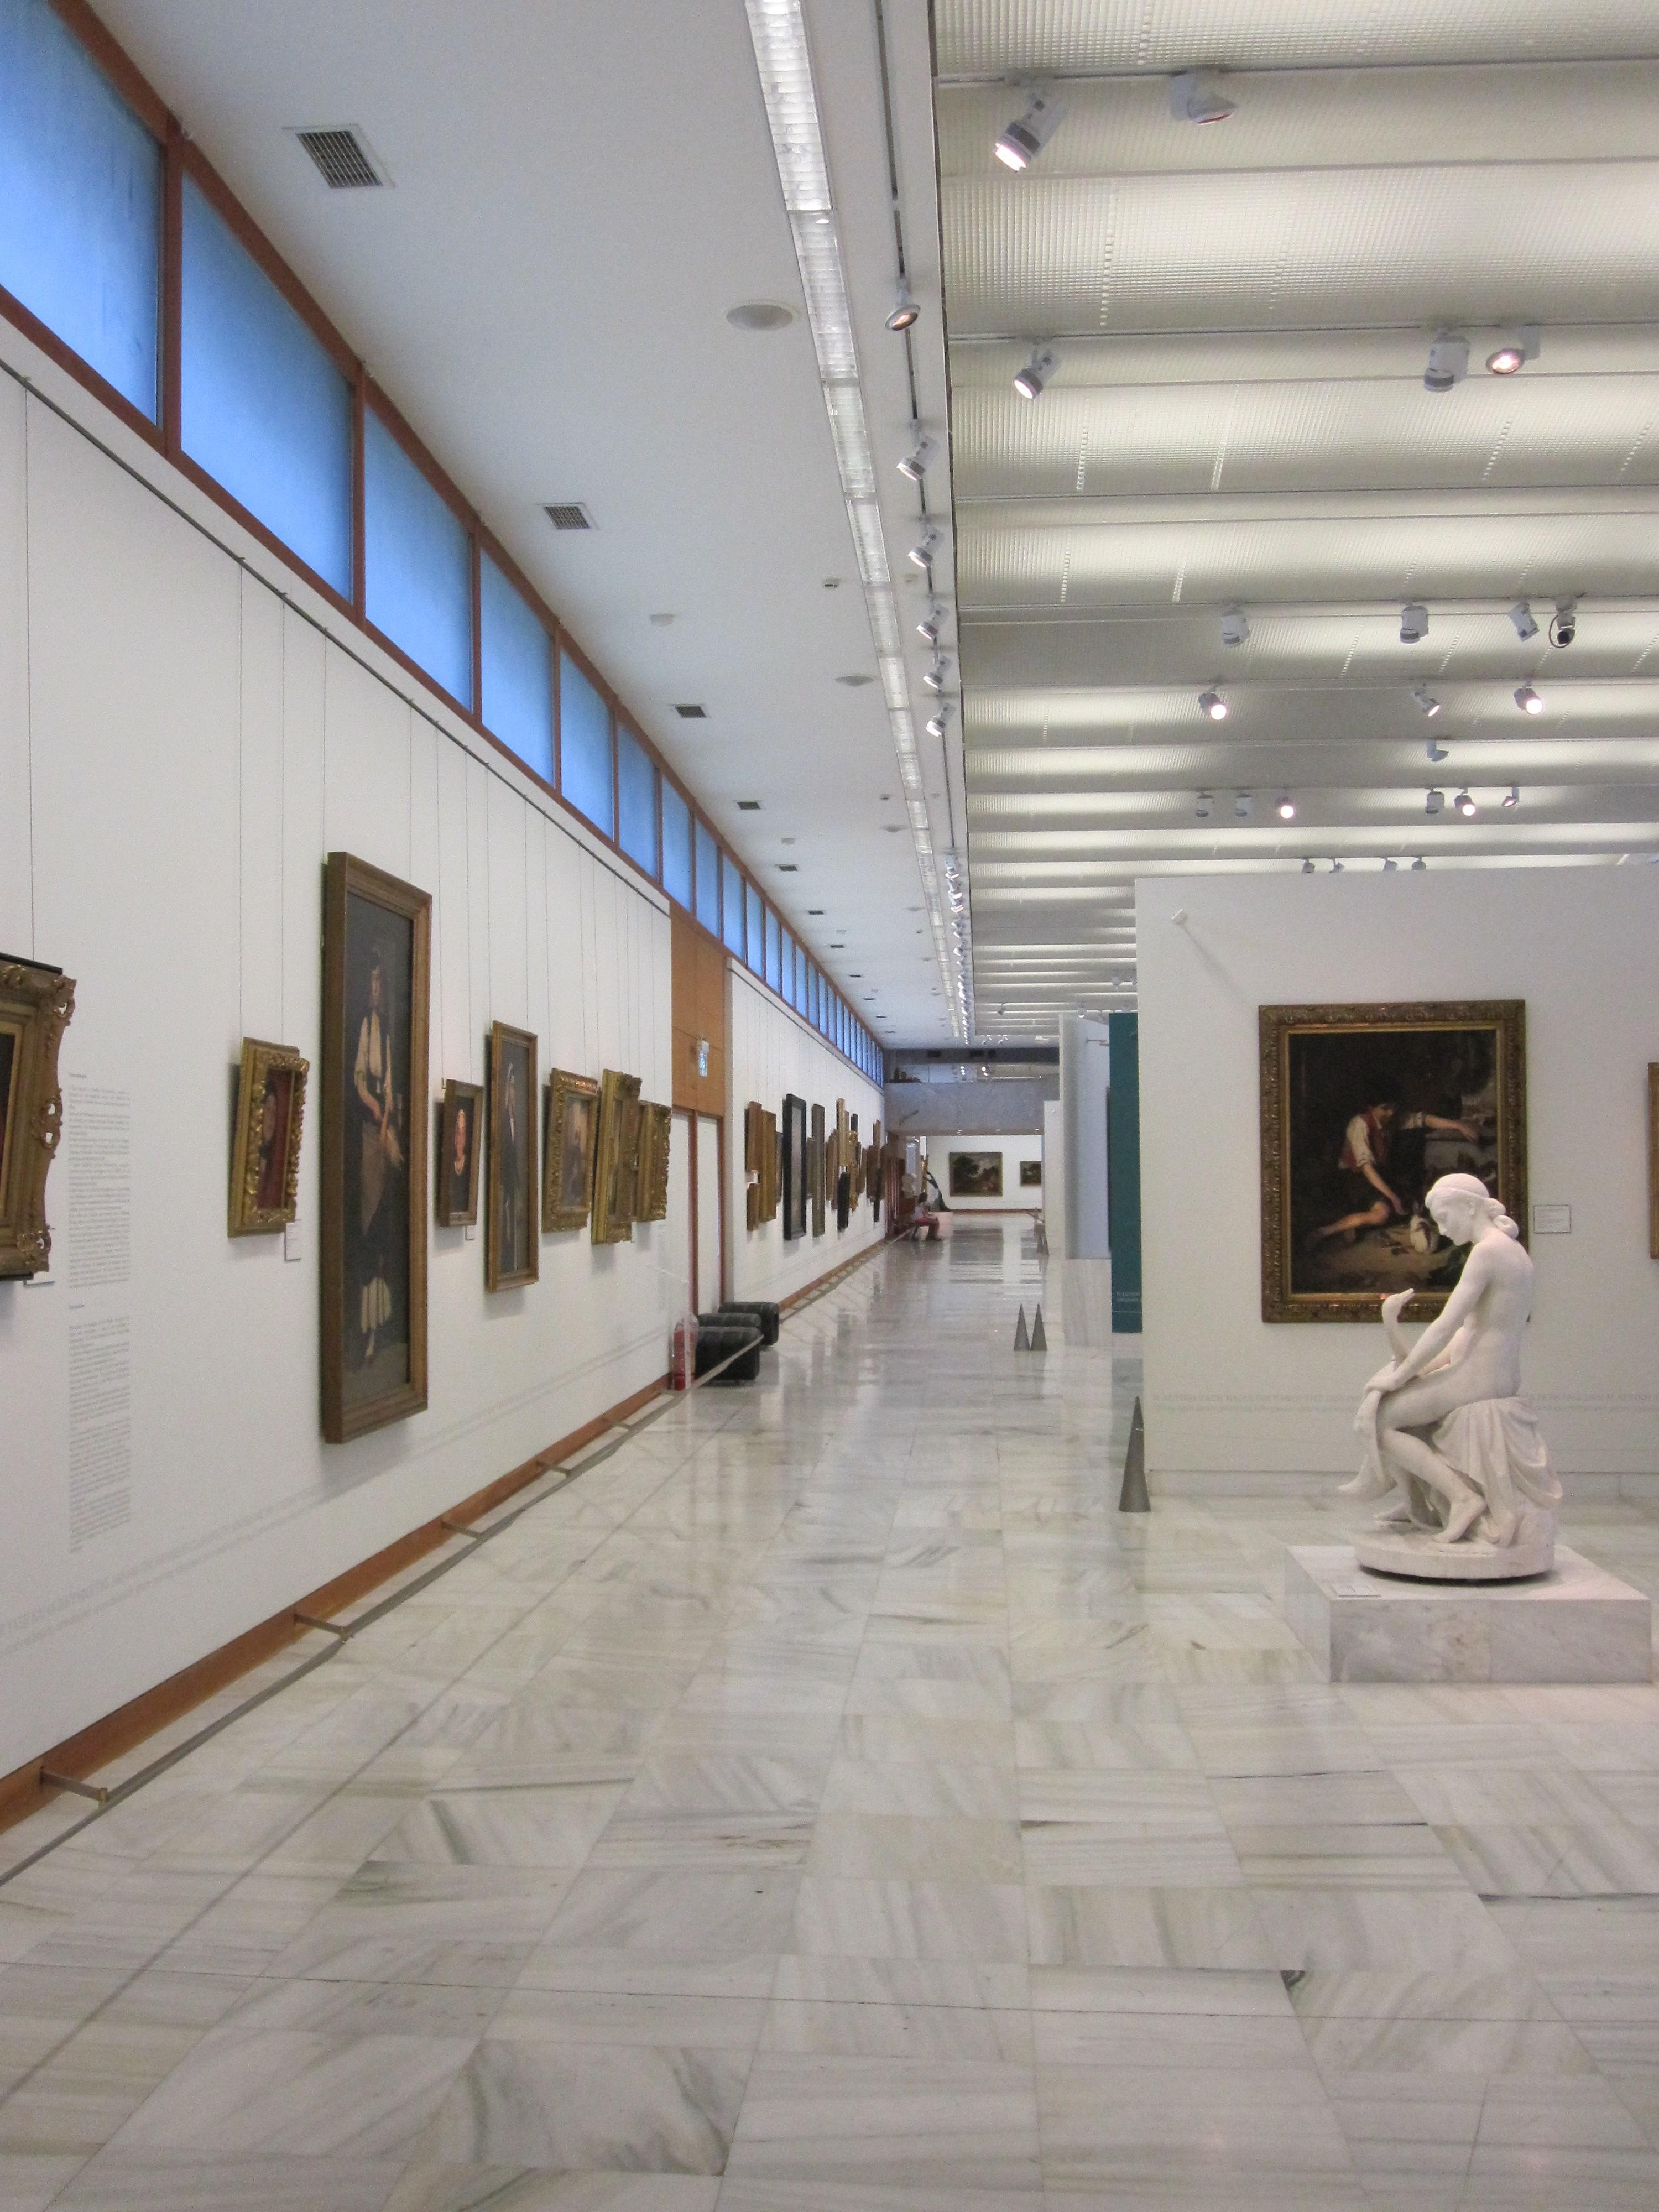 Национальная художественная галерея Афин